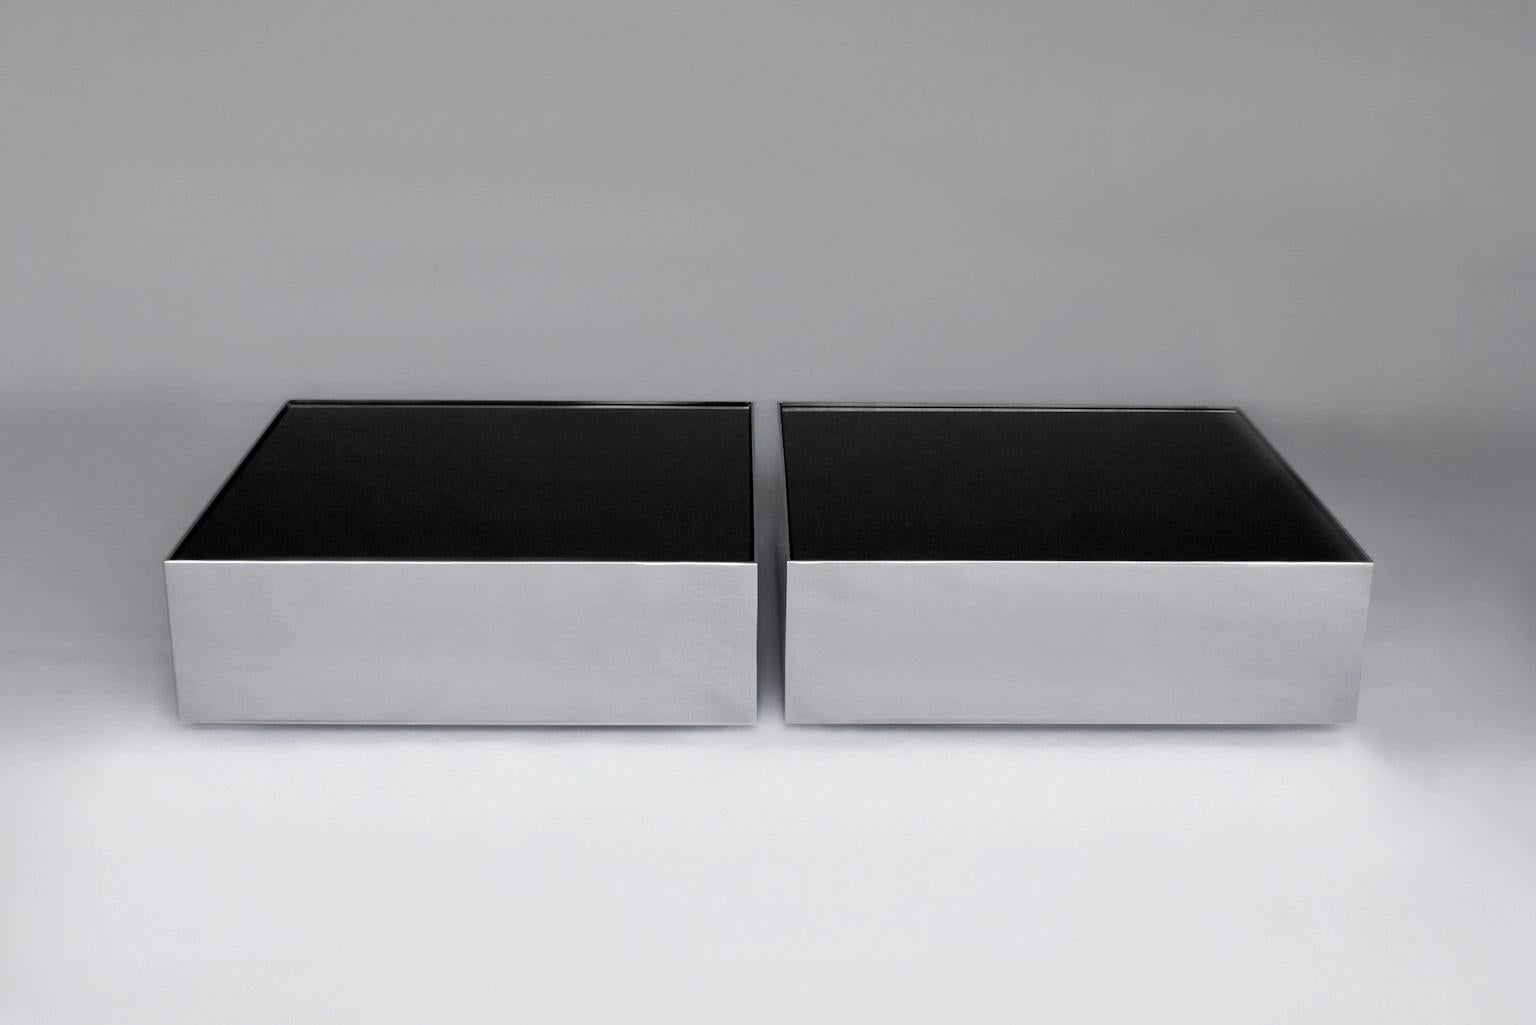 Ensemble de 2 tables basses à glace noire par Phase Design
Dimensions : P 76,2 x L 76,2 x H 25,4 cm.
MATERIAL : Verre de tympan et métal chromé poli.

Table basse en acier avec plateau en verre spandrel. Disponible en finition chrome poli ou